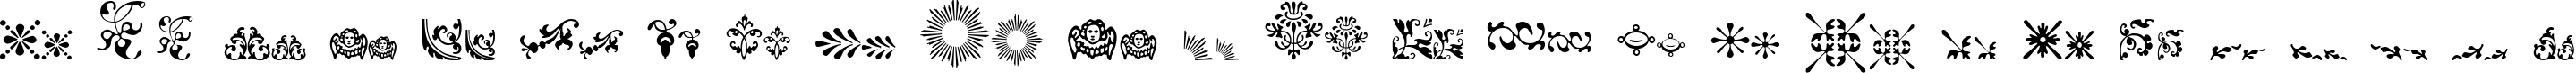 Пример написания английского алфавита шрифтом FleurDesign Dingbats